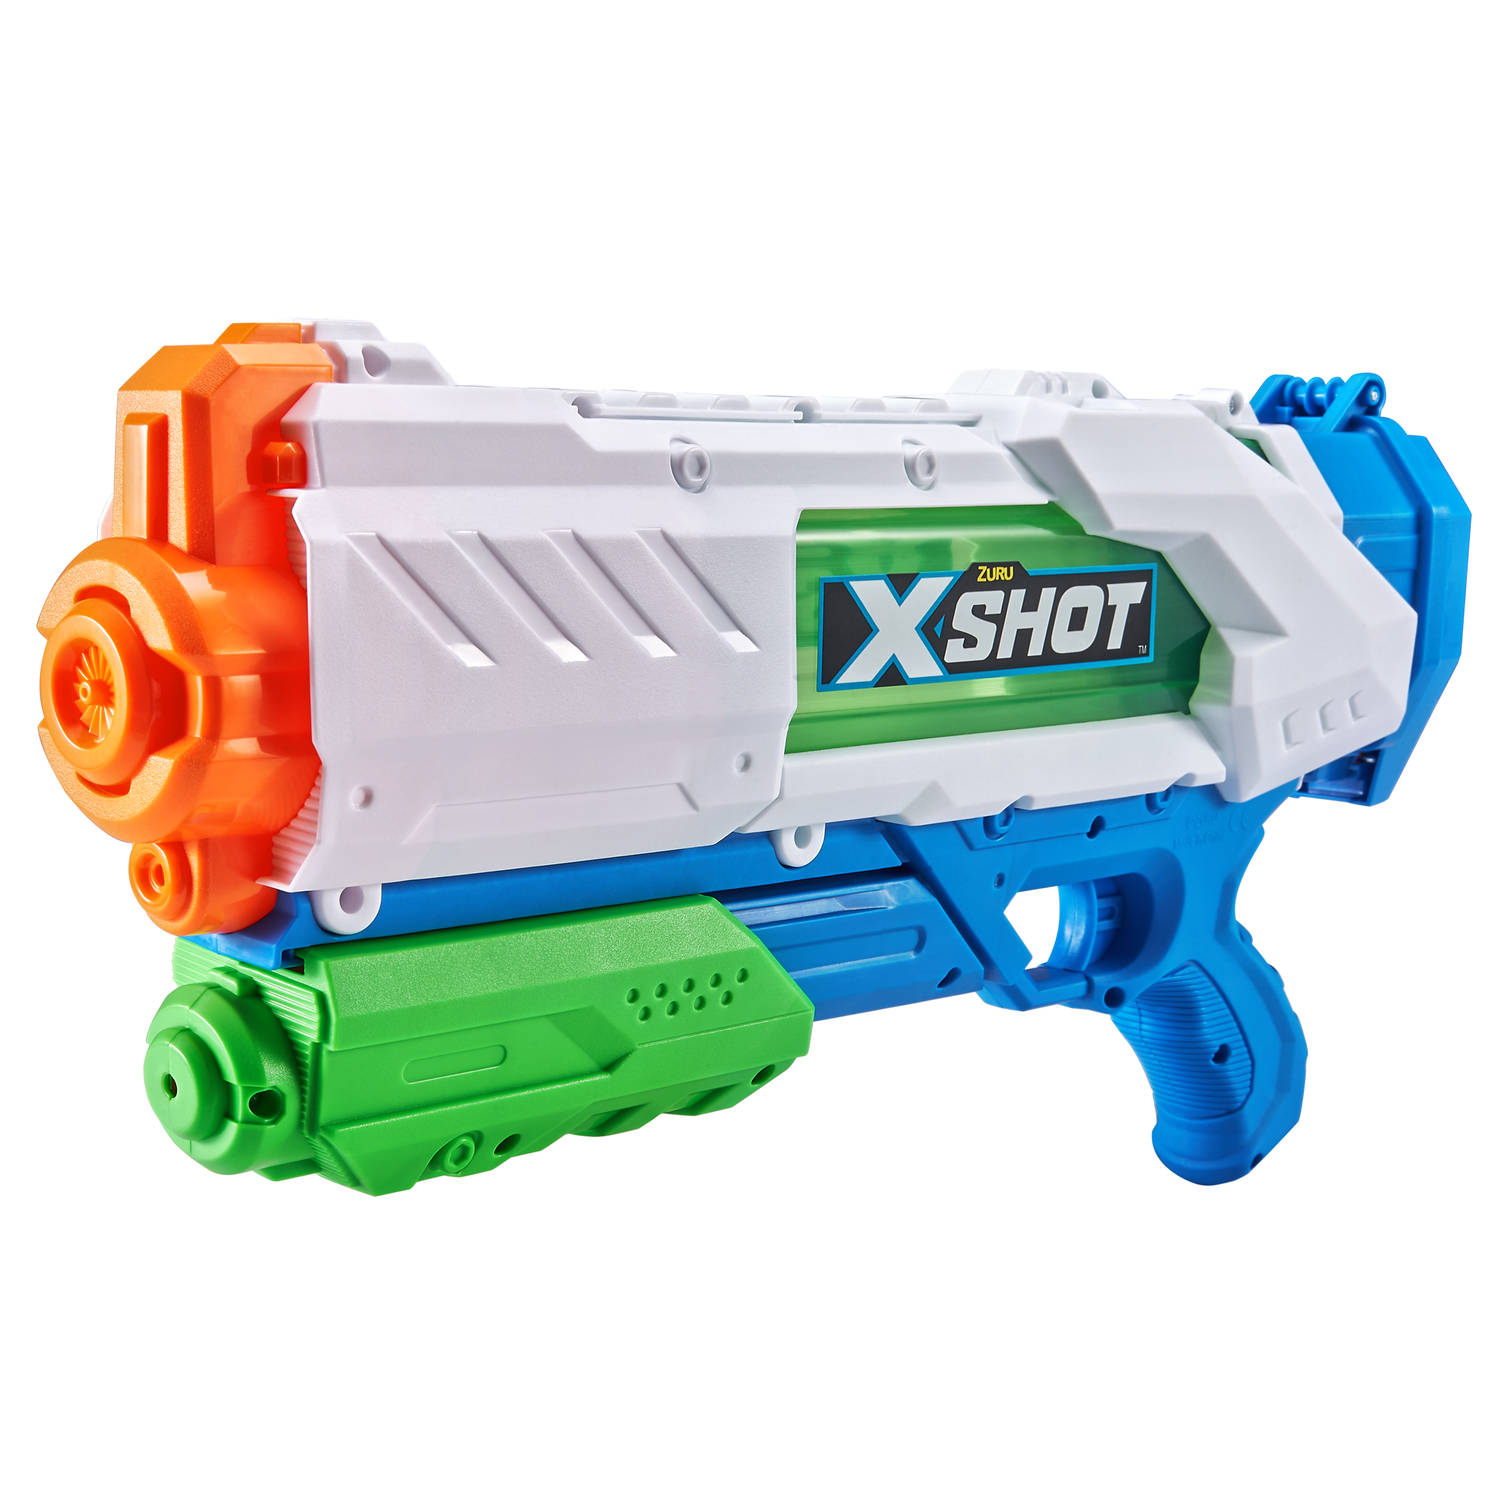 X-shot Watergun Fast